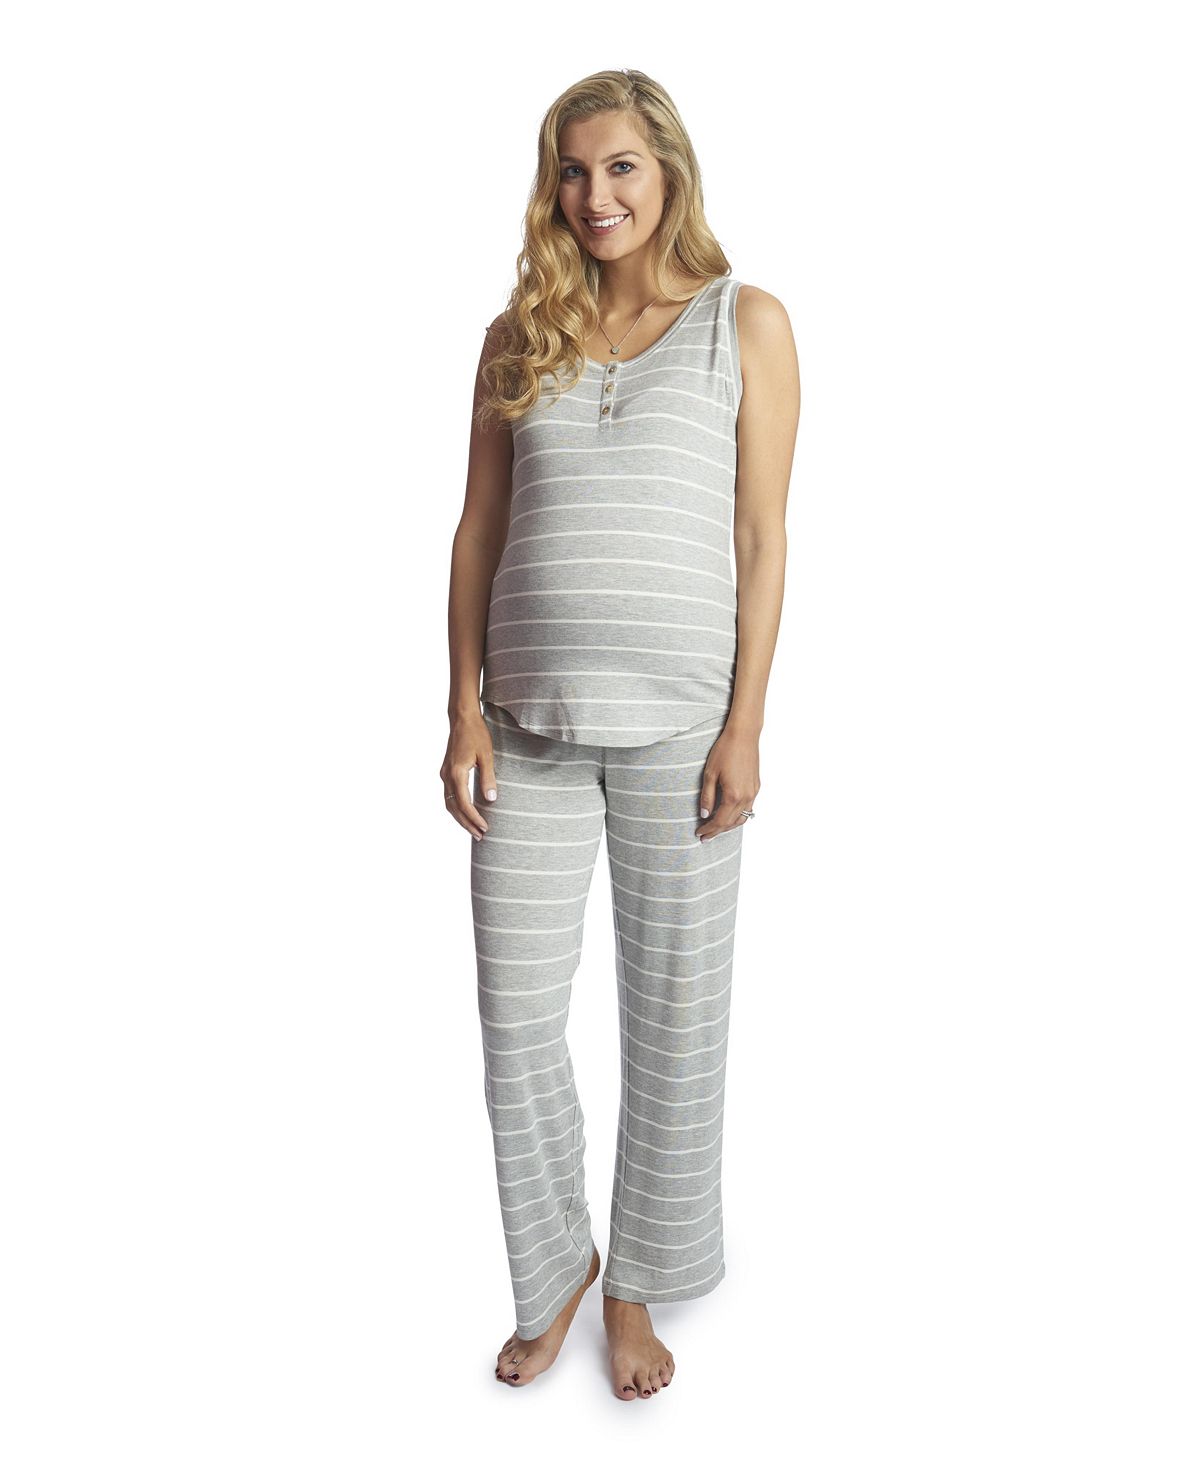 Женский пижамный комплект joy tank & pants для беременных и кормящих мам Everly Grey, мульти